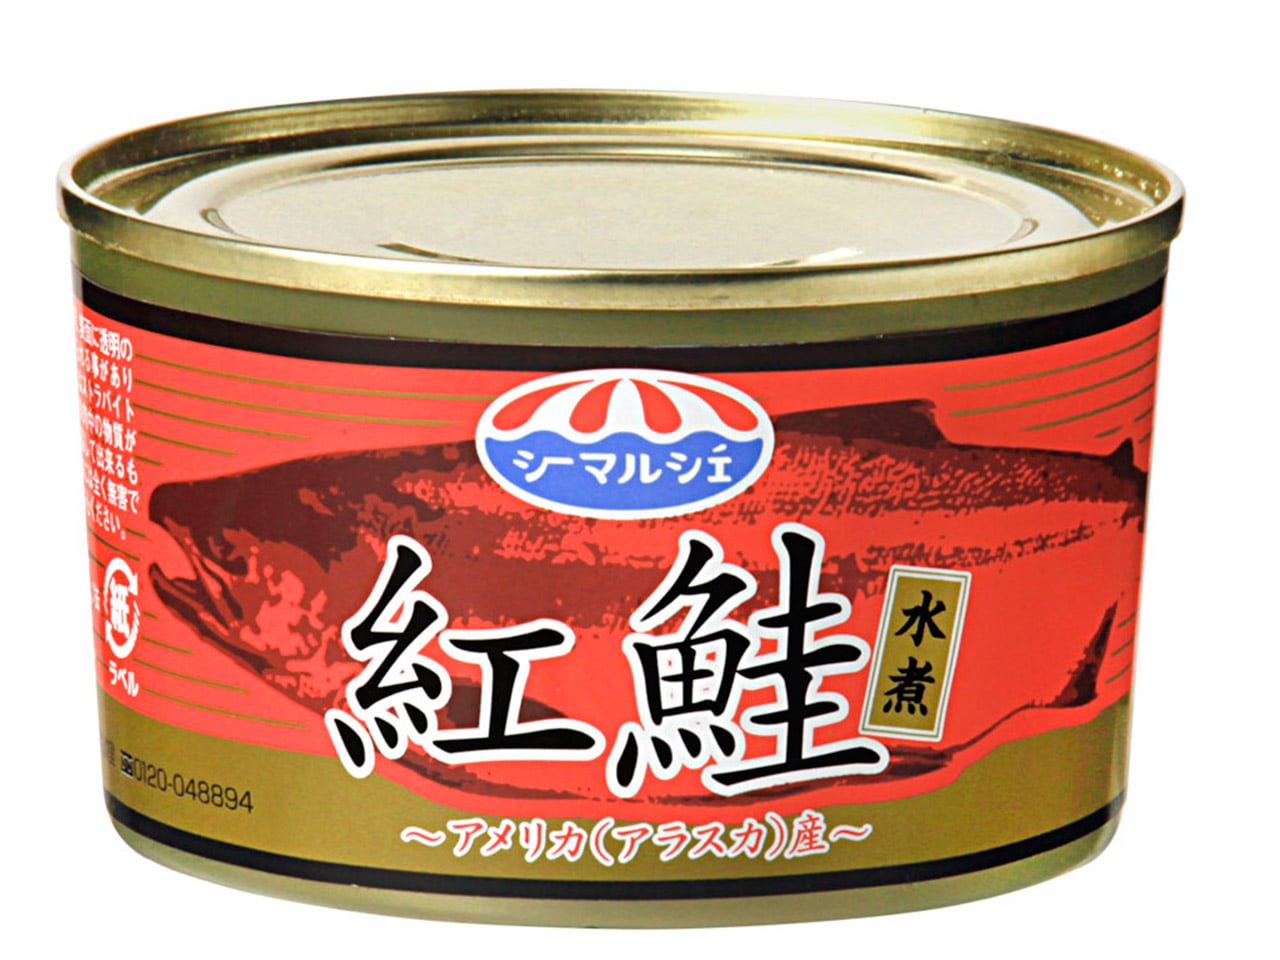  アメリカ(アラスカ)産紅鮭水煮 【12缶セット】